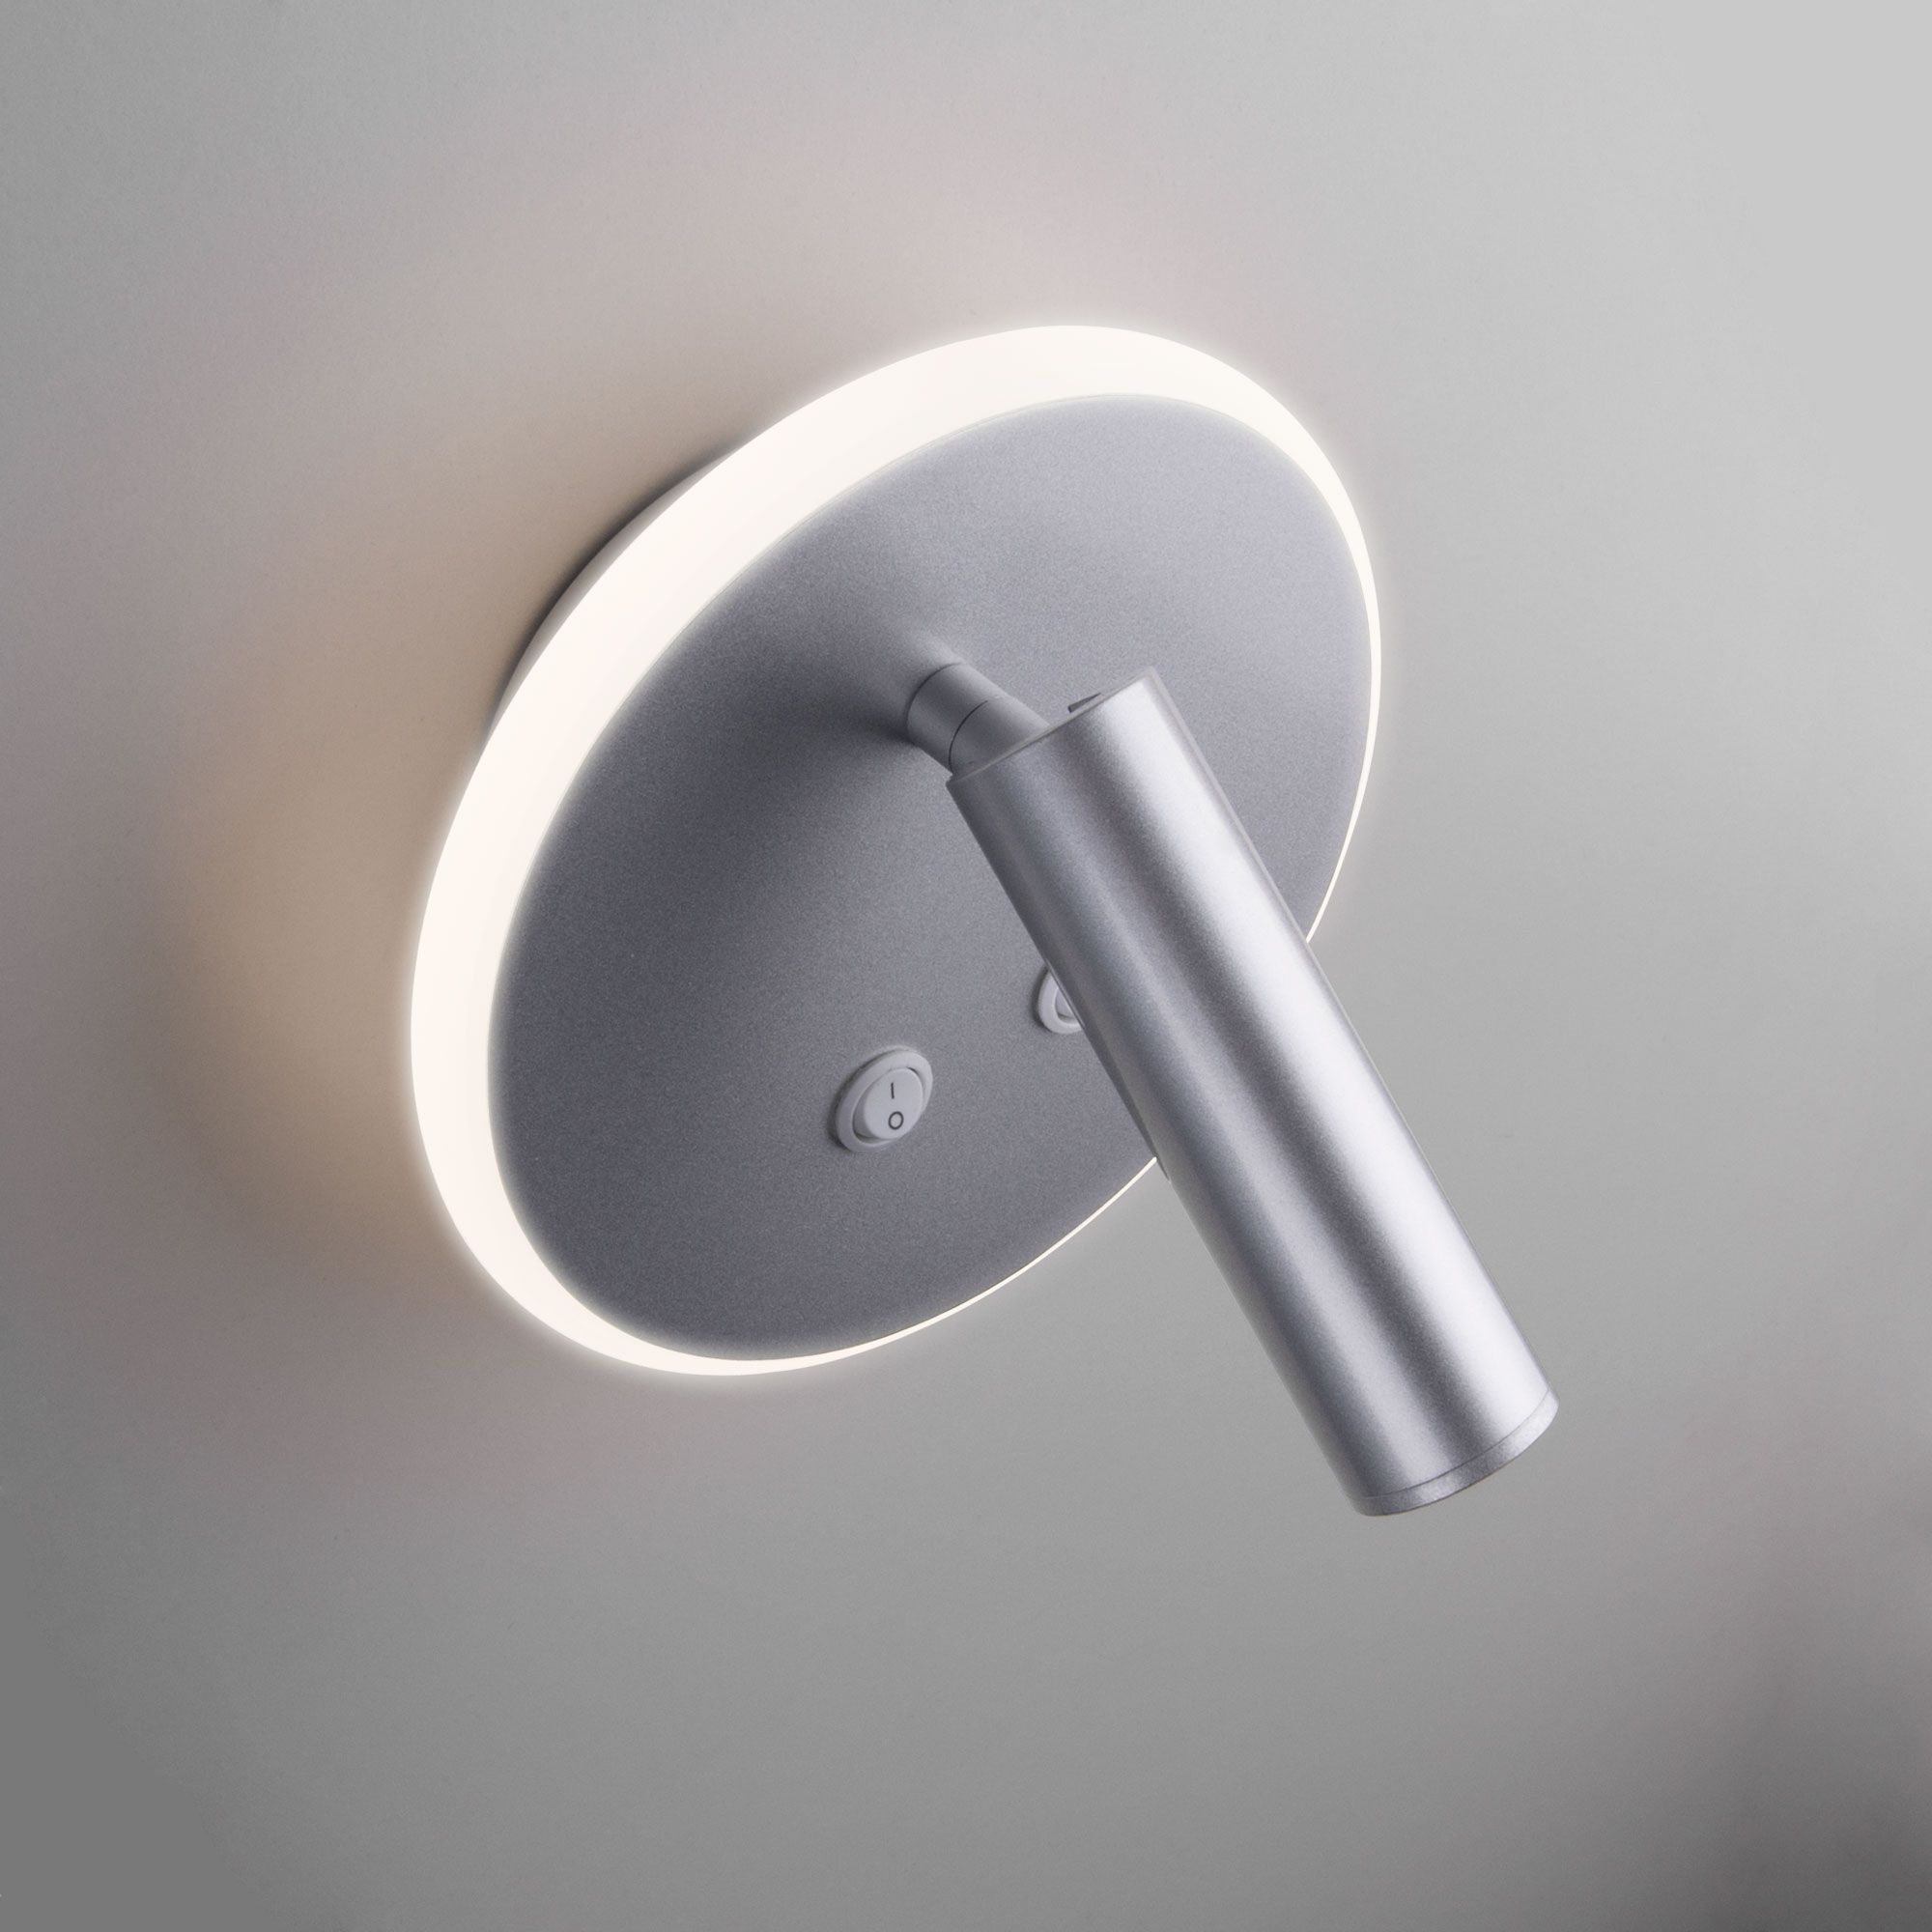 Настенный светодиодный светильник Tera LED MRL LED 1014 серебро